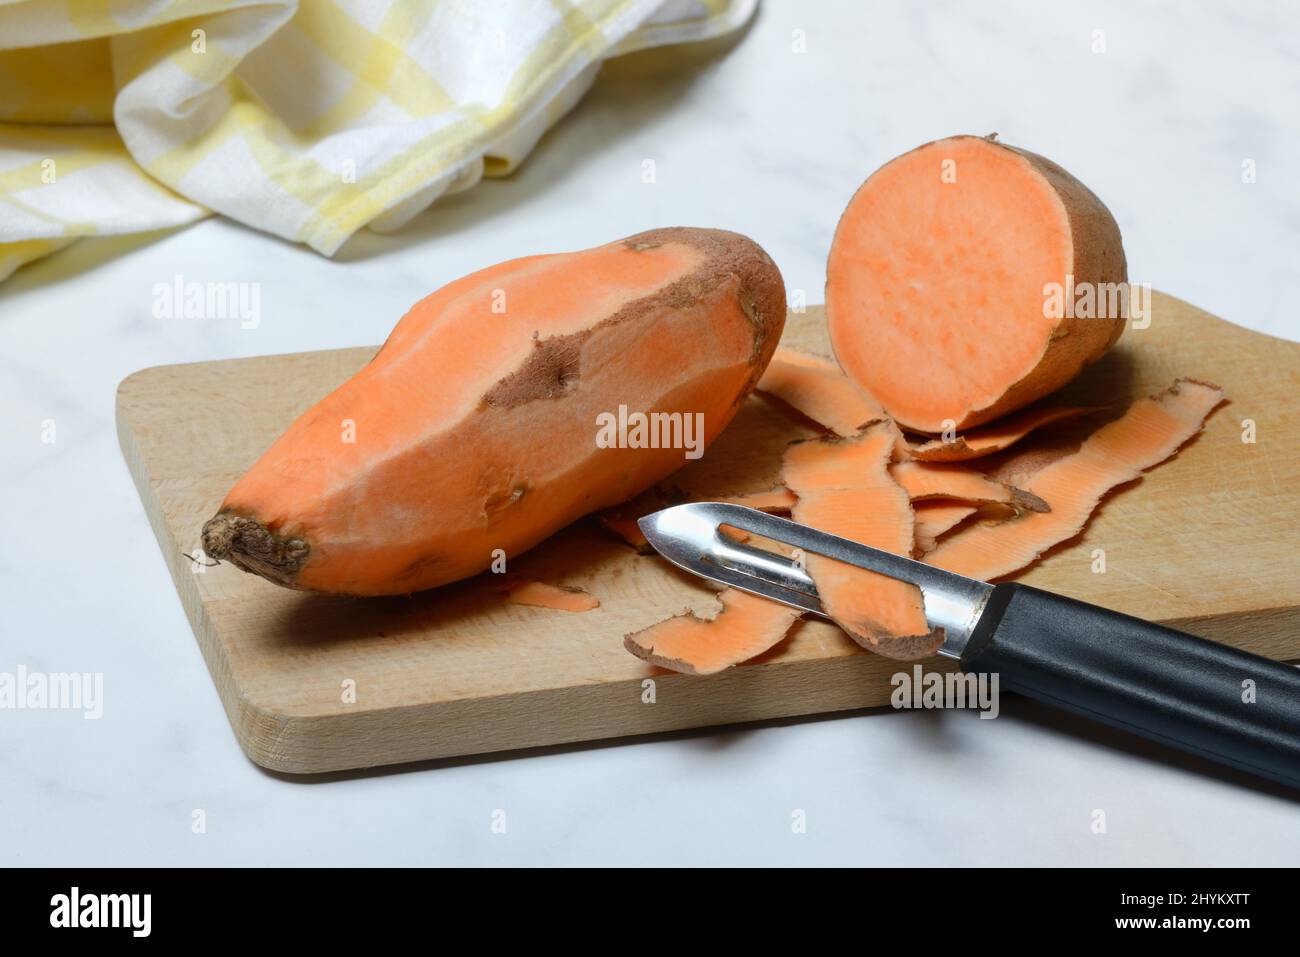 https://c8.alamy.com/comp/2HYKXTT/sweet-potato-ipomoea-batatas-peeled-sweet-potato-with-potato-peeler-2HYKXTT.jpg